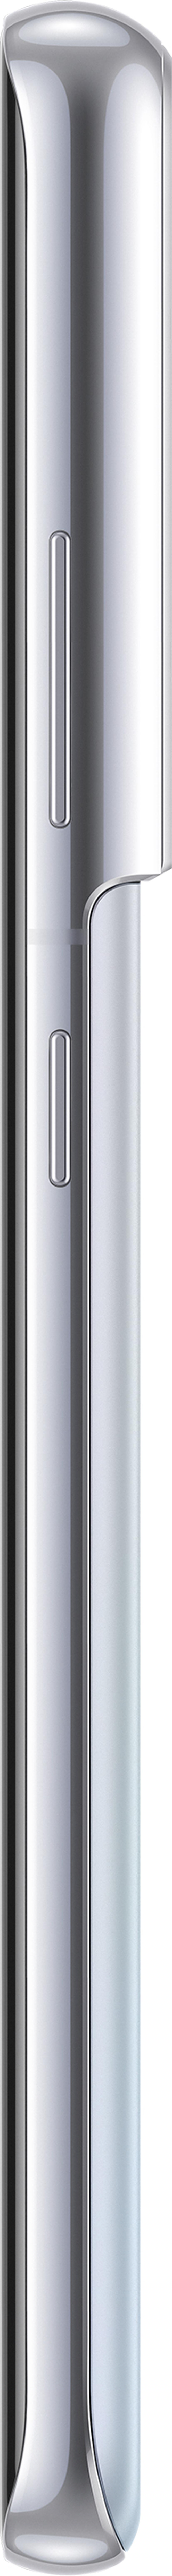 Samsung Galaxy S21 Ultra 5G 256GB Dual-SIM Fantomsilver